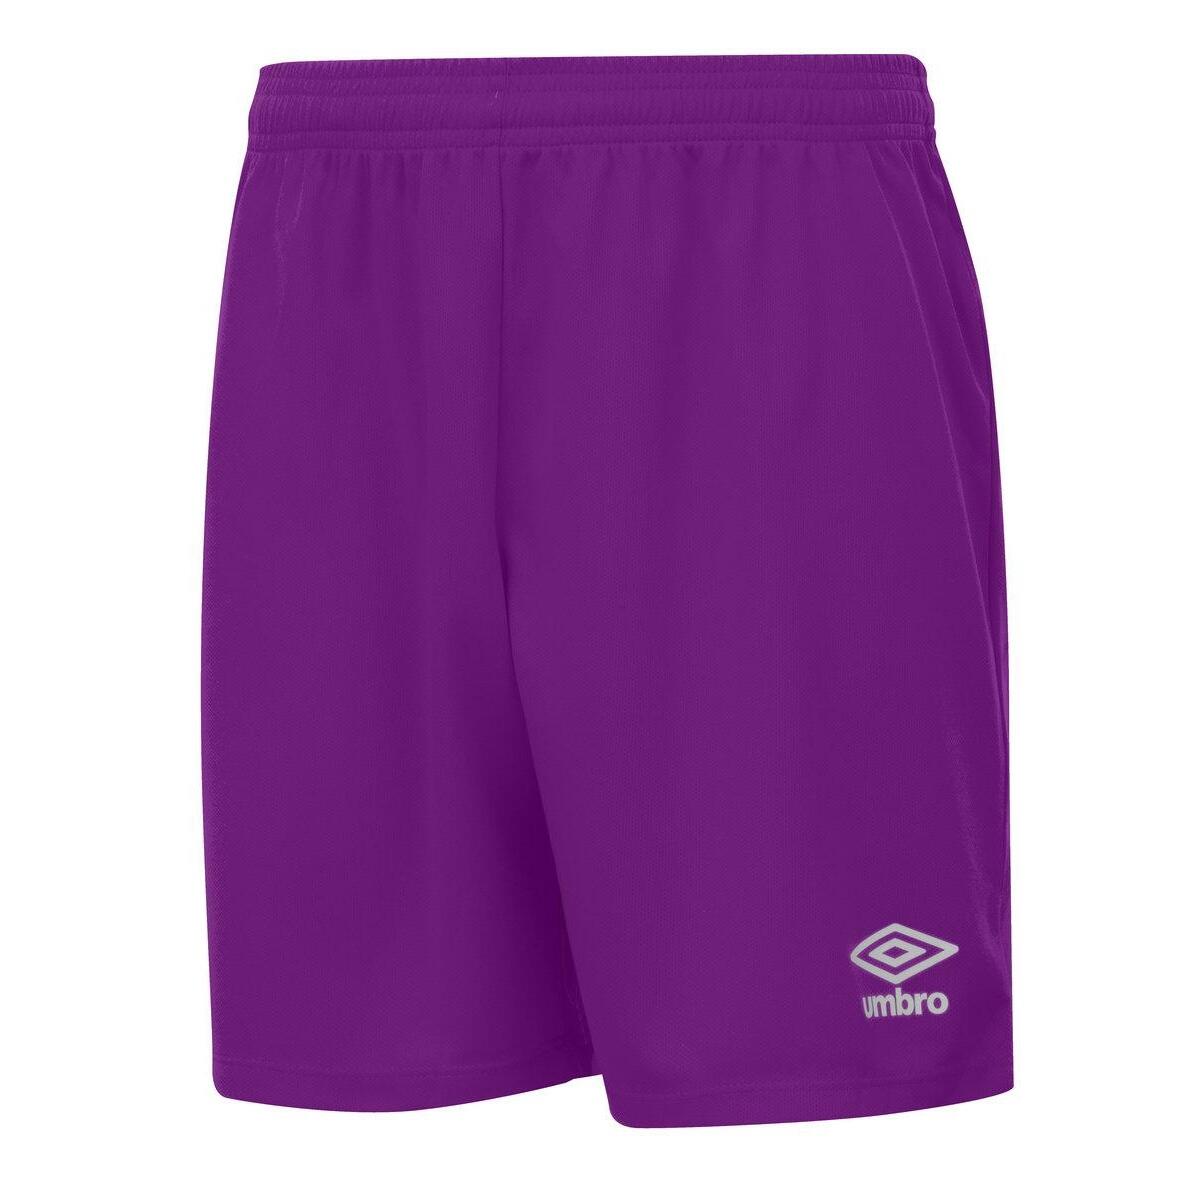 UMBRO Mens Club II Shorts (Purple Cactus)